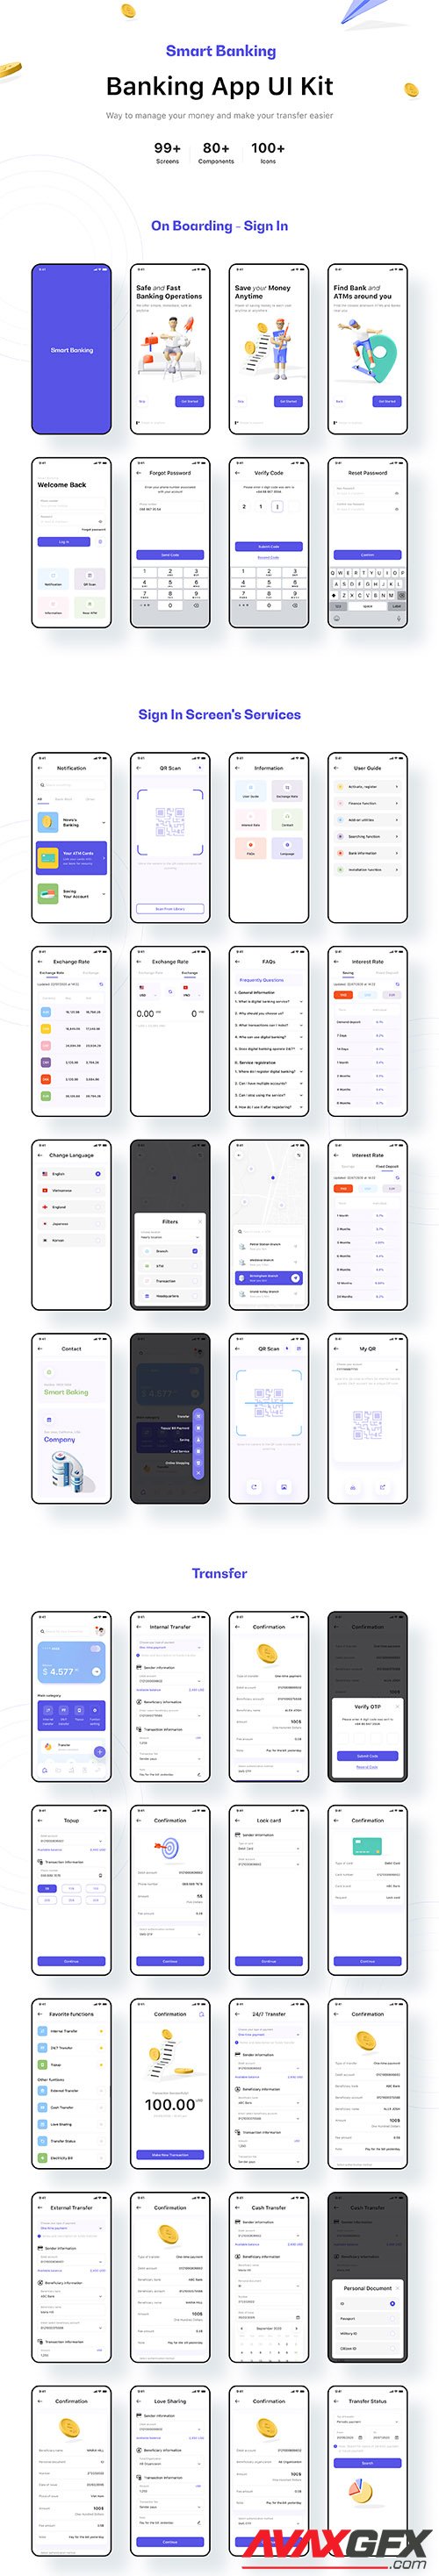 tmrw.bank - Smart Banking UI Kit